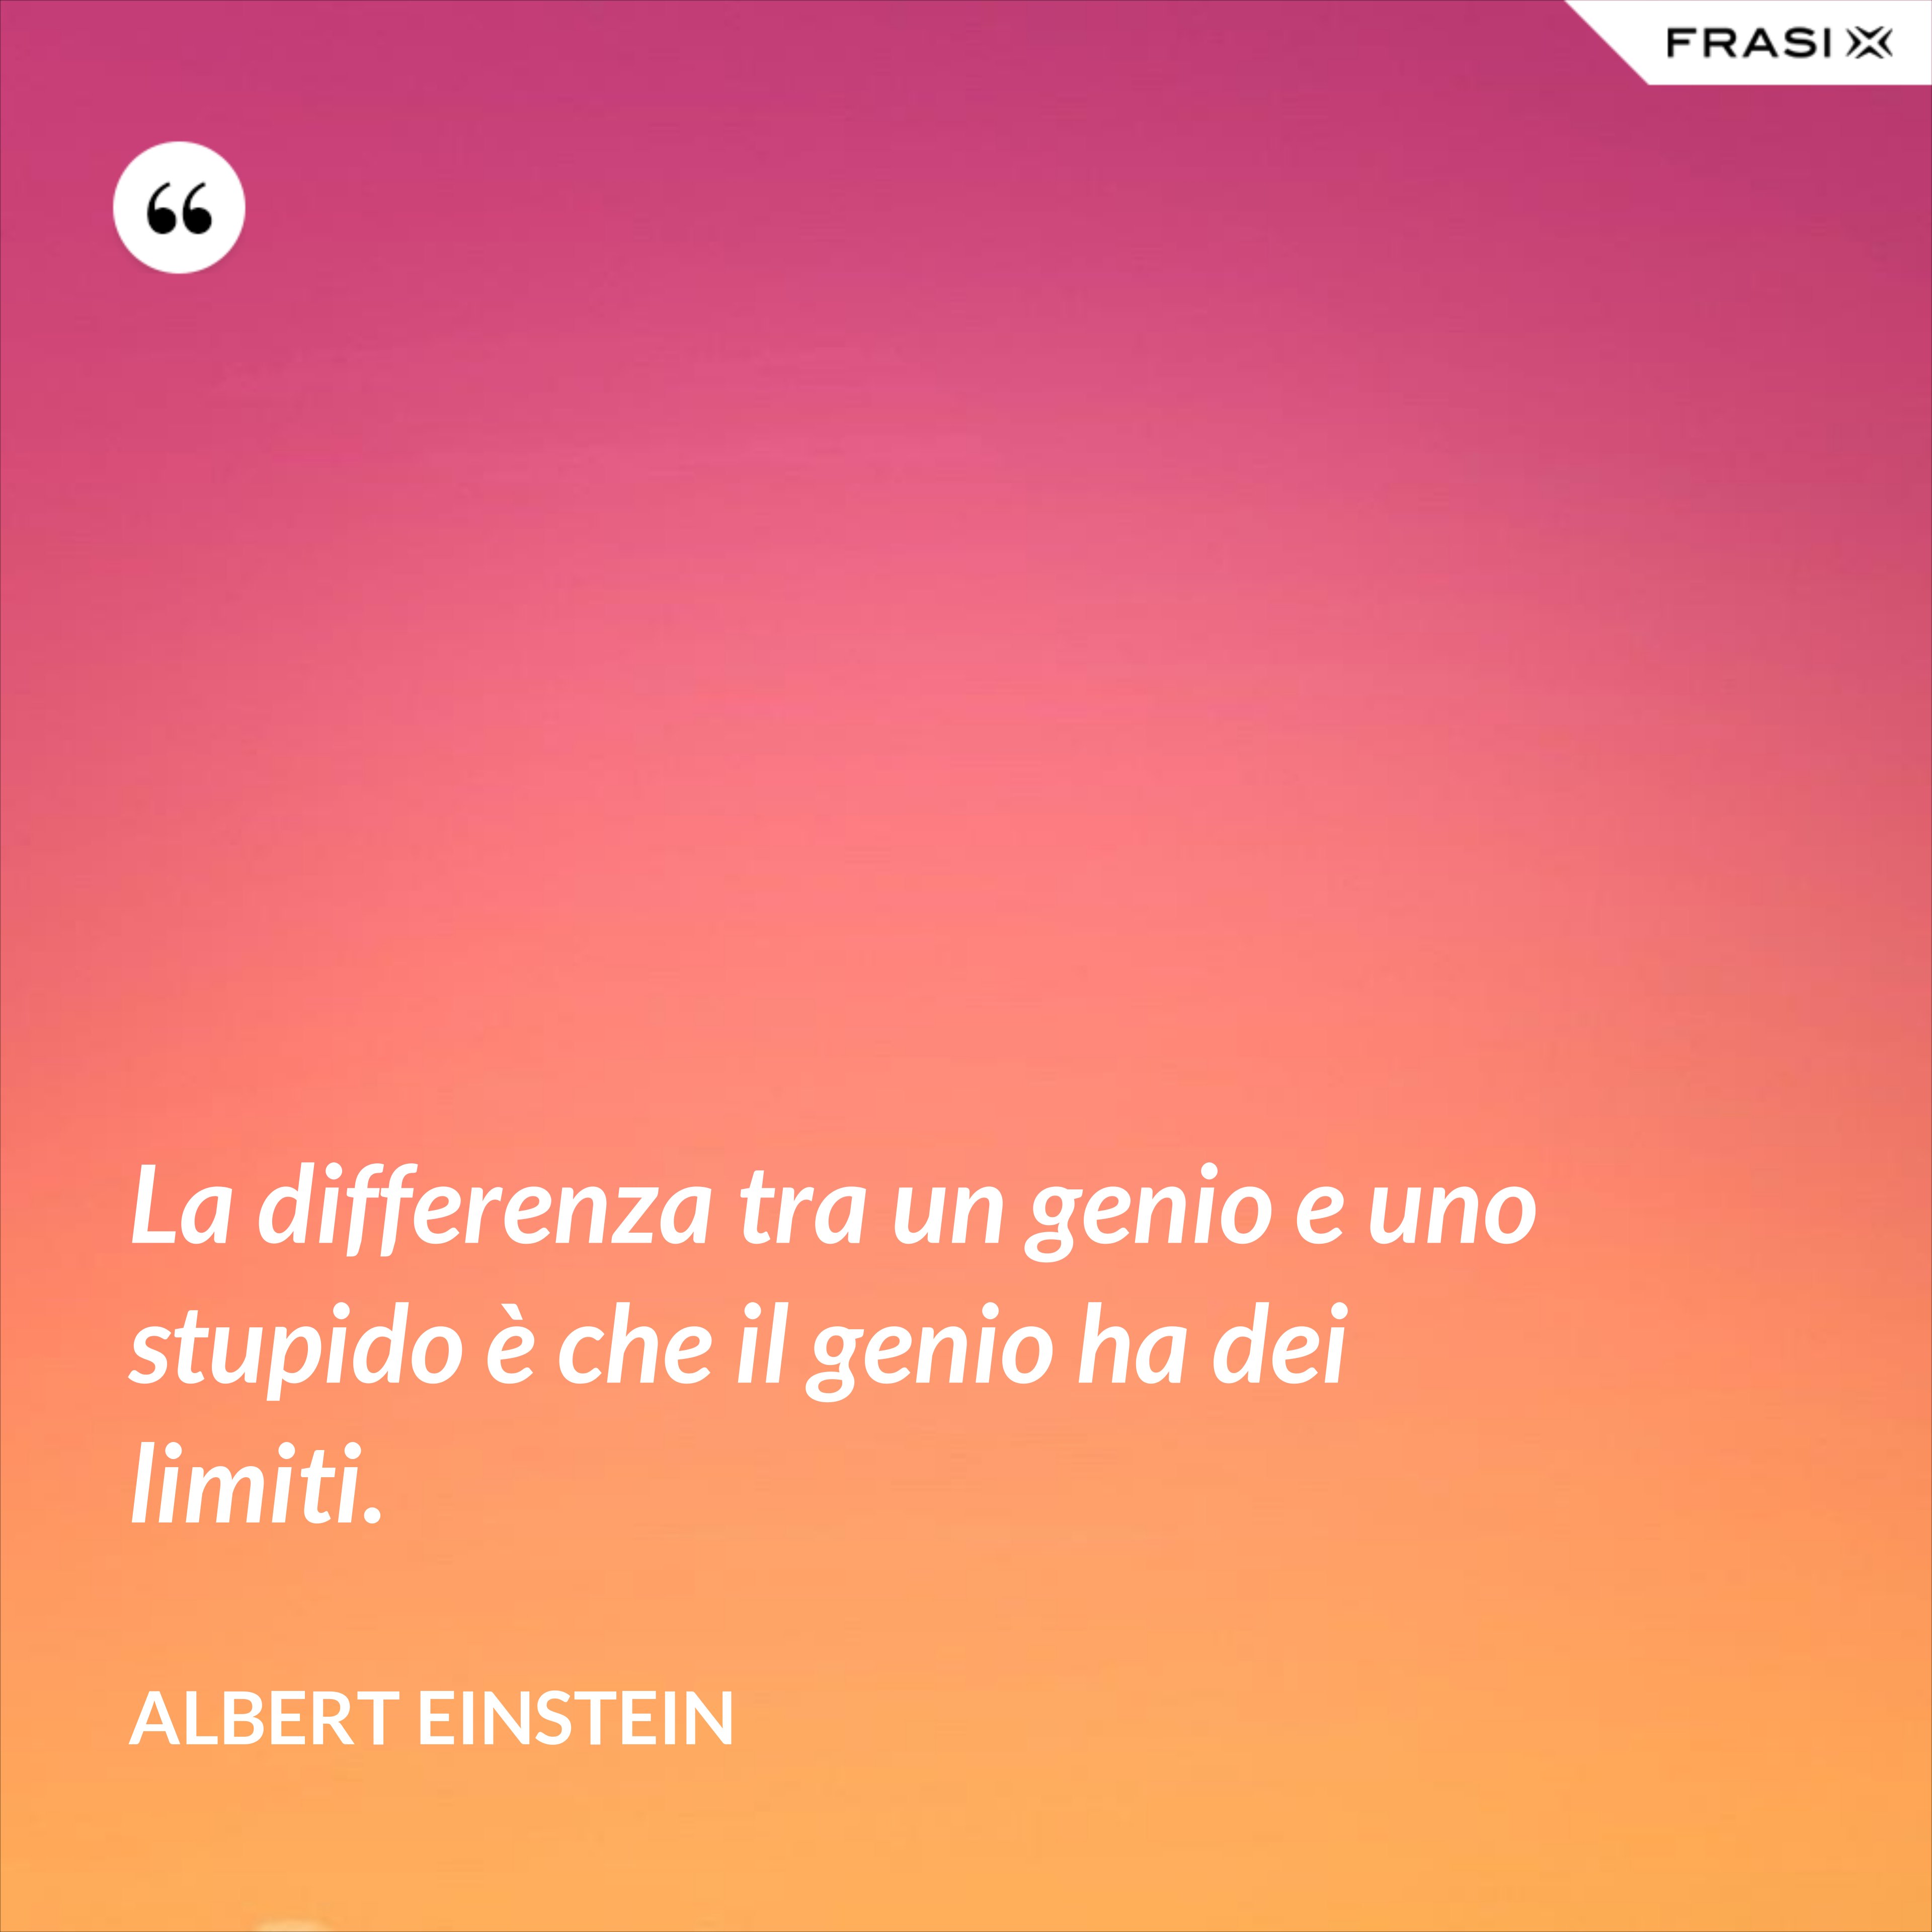 La differenza tra un genio e uno stupido è che il genio ha dei limiti. - Albert Einstein